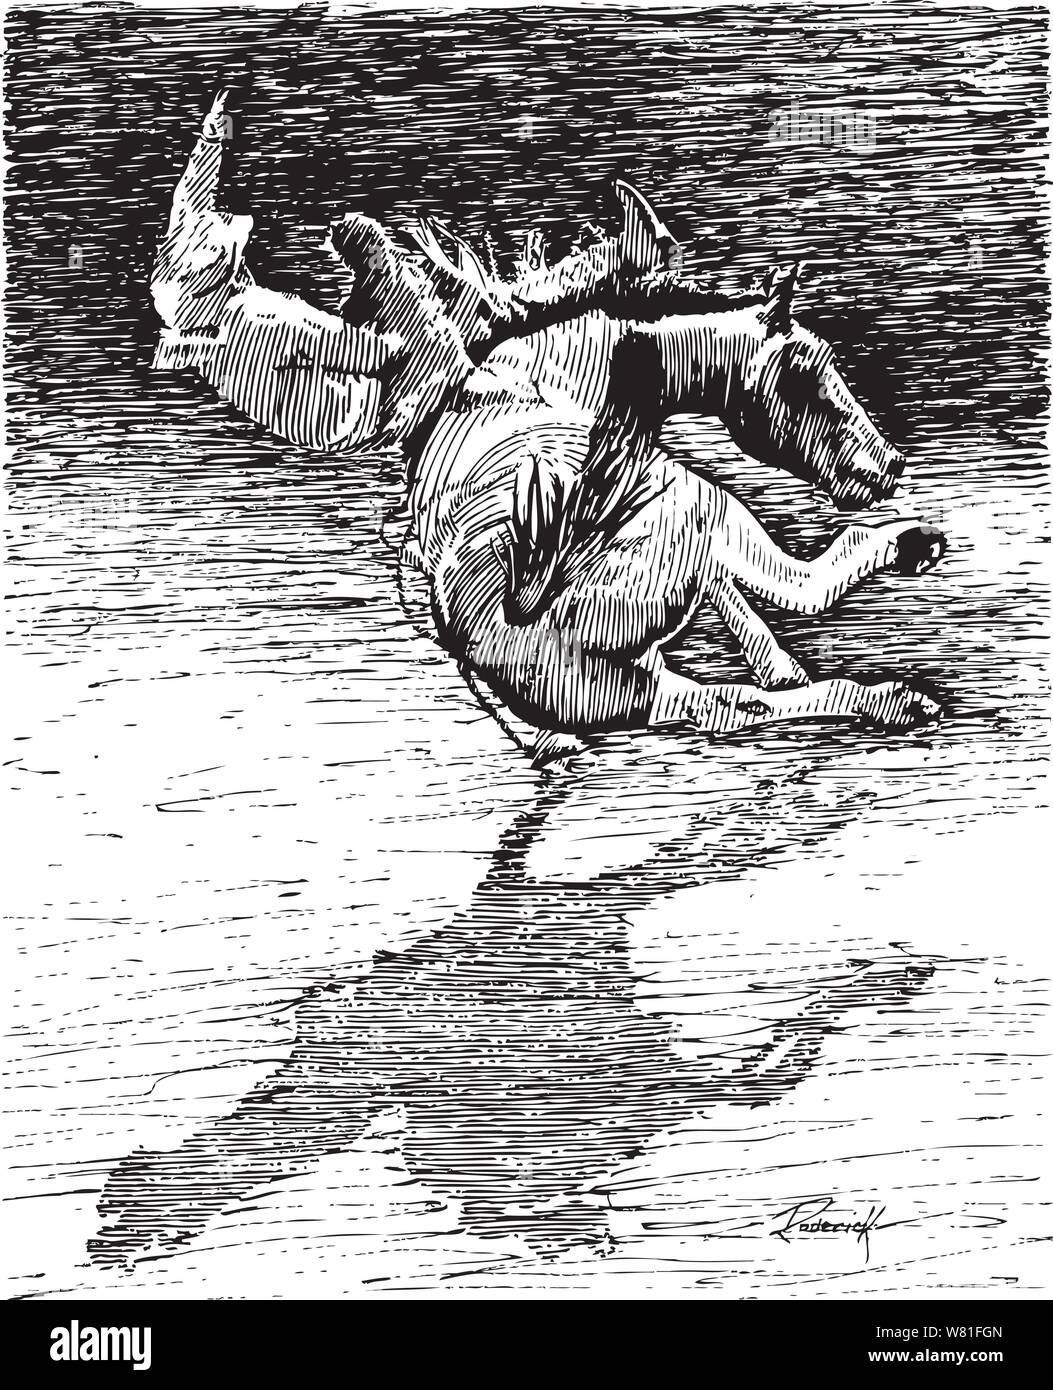 Brave rodeo rider équitation une jambe coups de Wild Horse sur un cheval monte seulement silloette Illustration de Vecteur